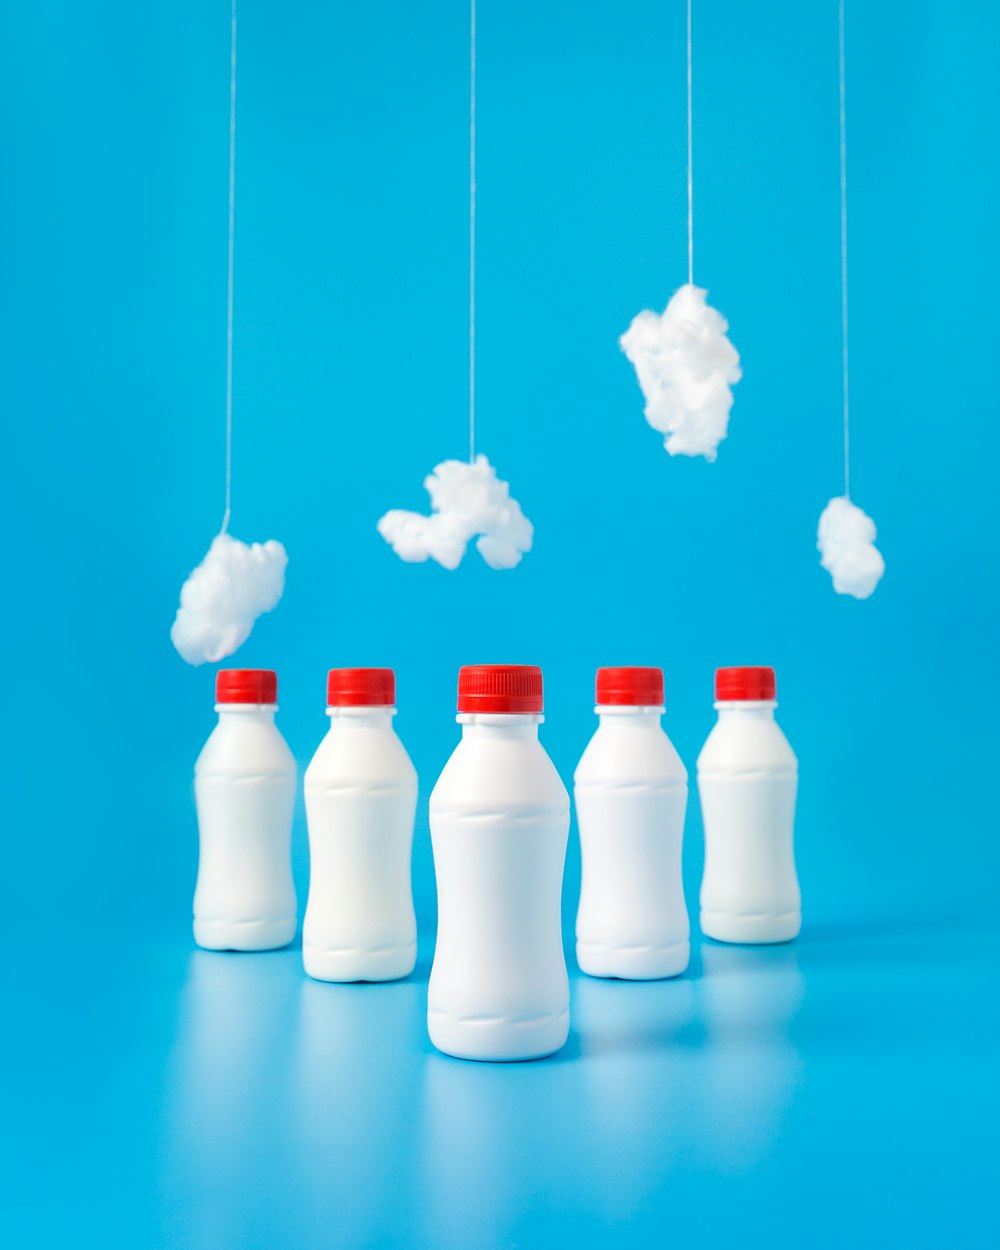 Cinq bouteilles en plastique blanc sur une surface bleue